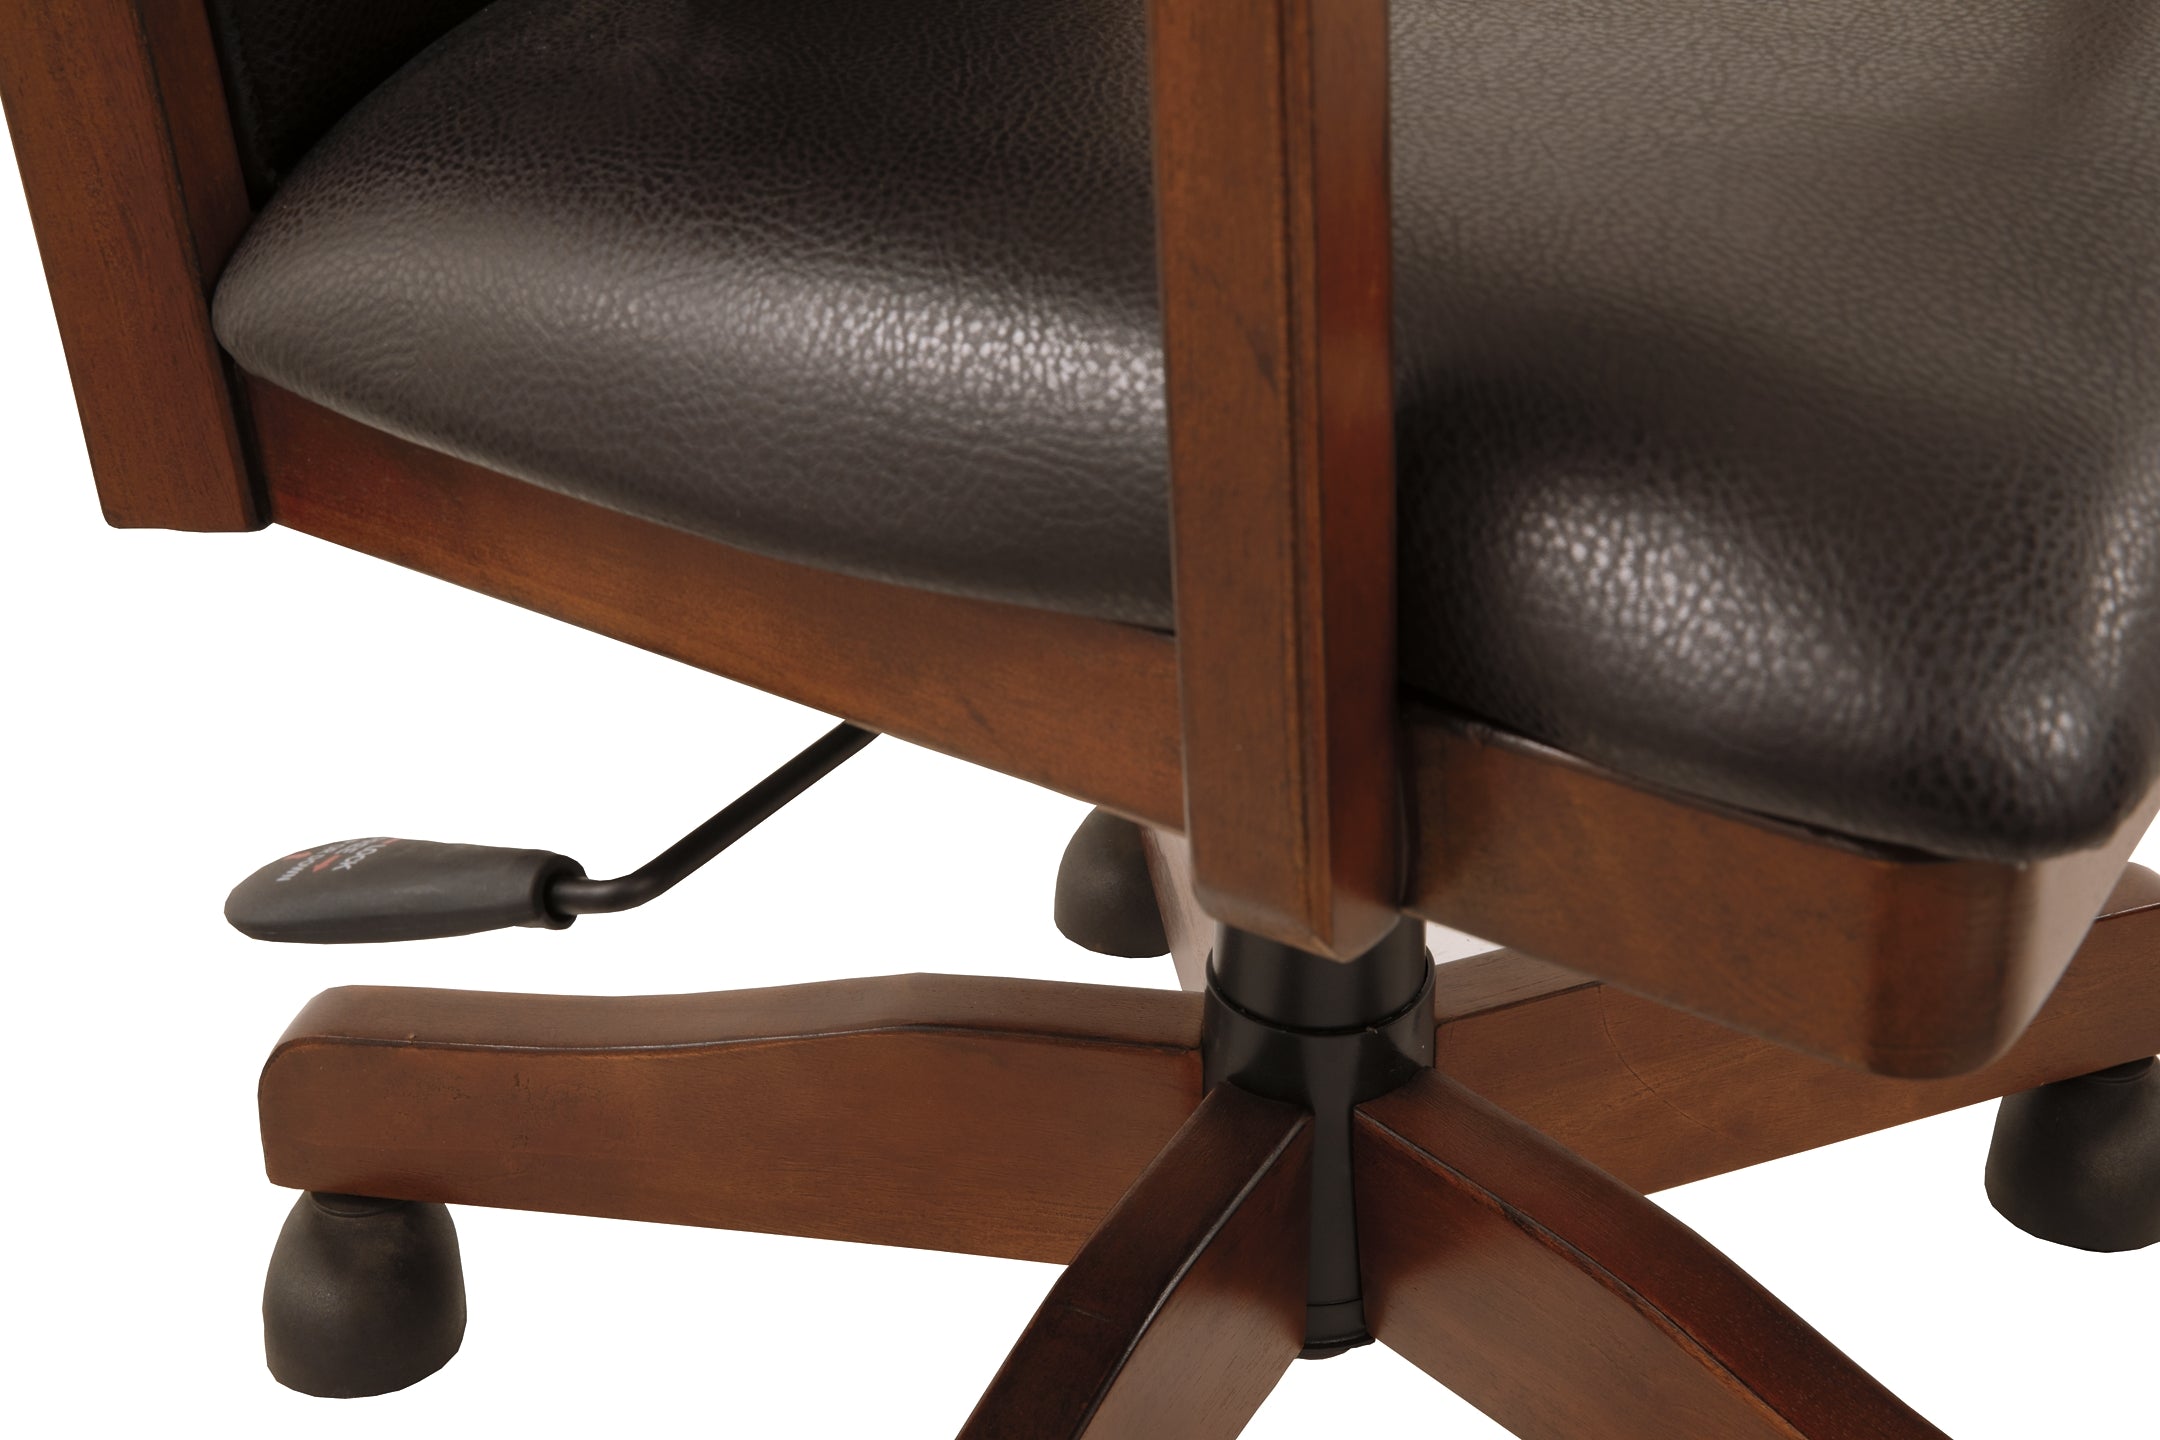 Hamlyn Home Office Swivel Desk Chair